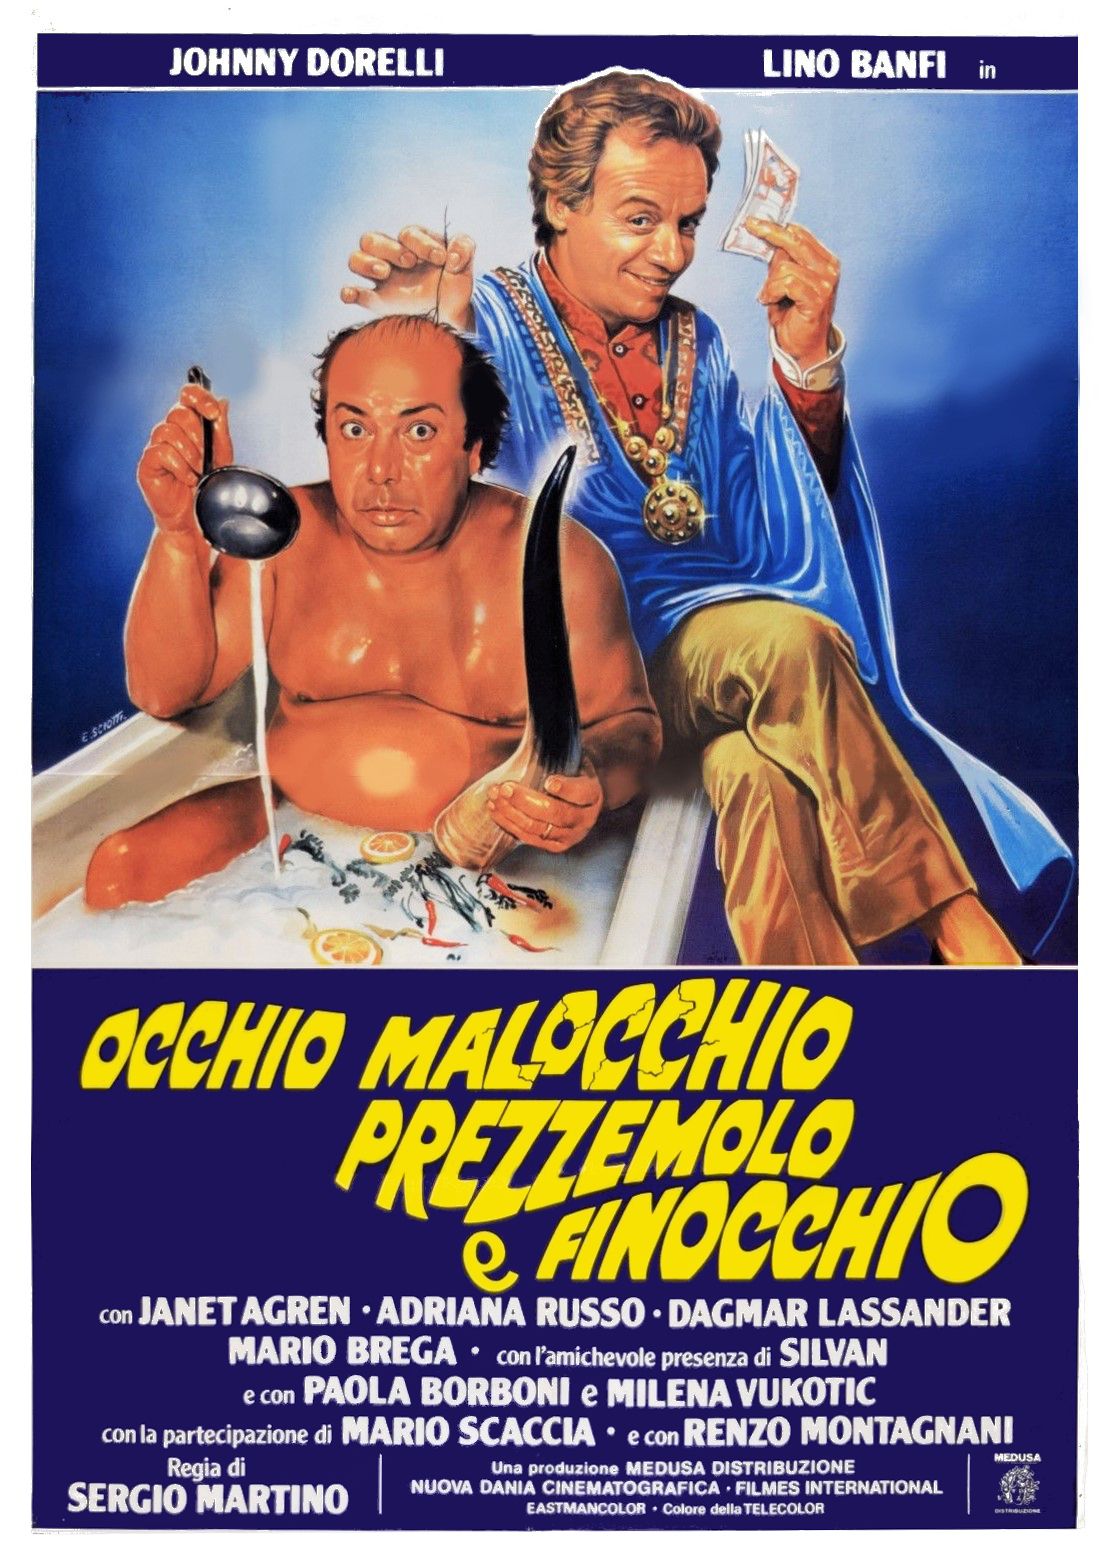 Occhio, malocchio, prezzemolo e finocchio (1983) Screenshot 4 